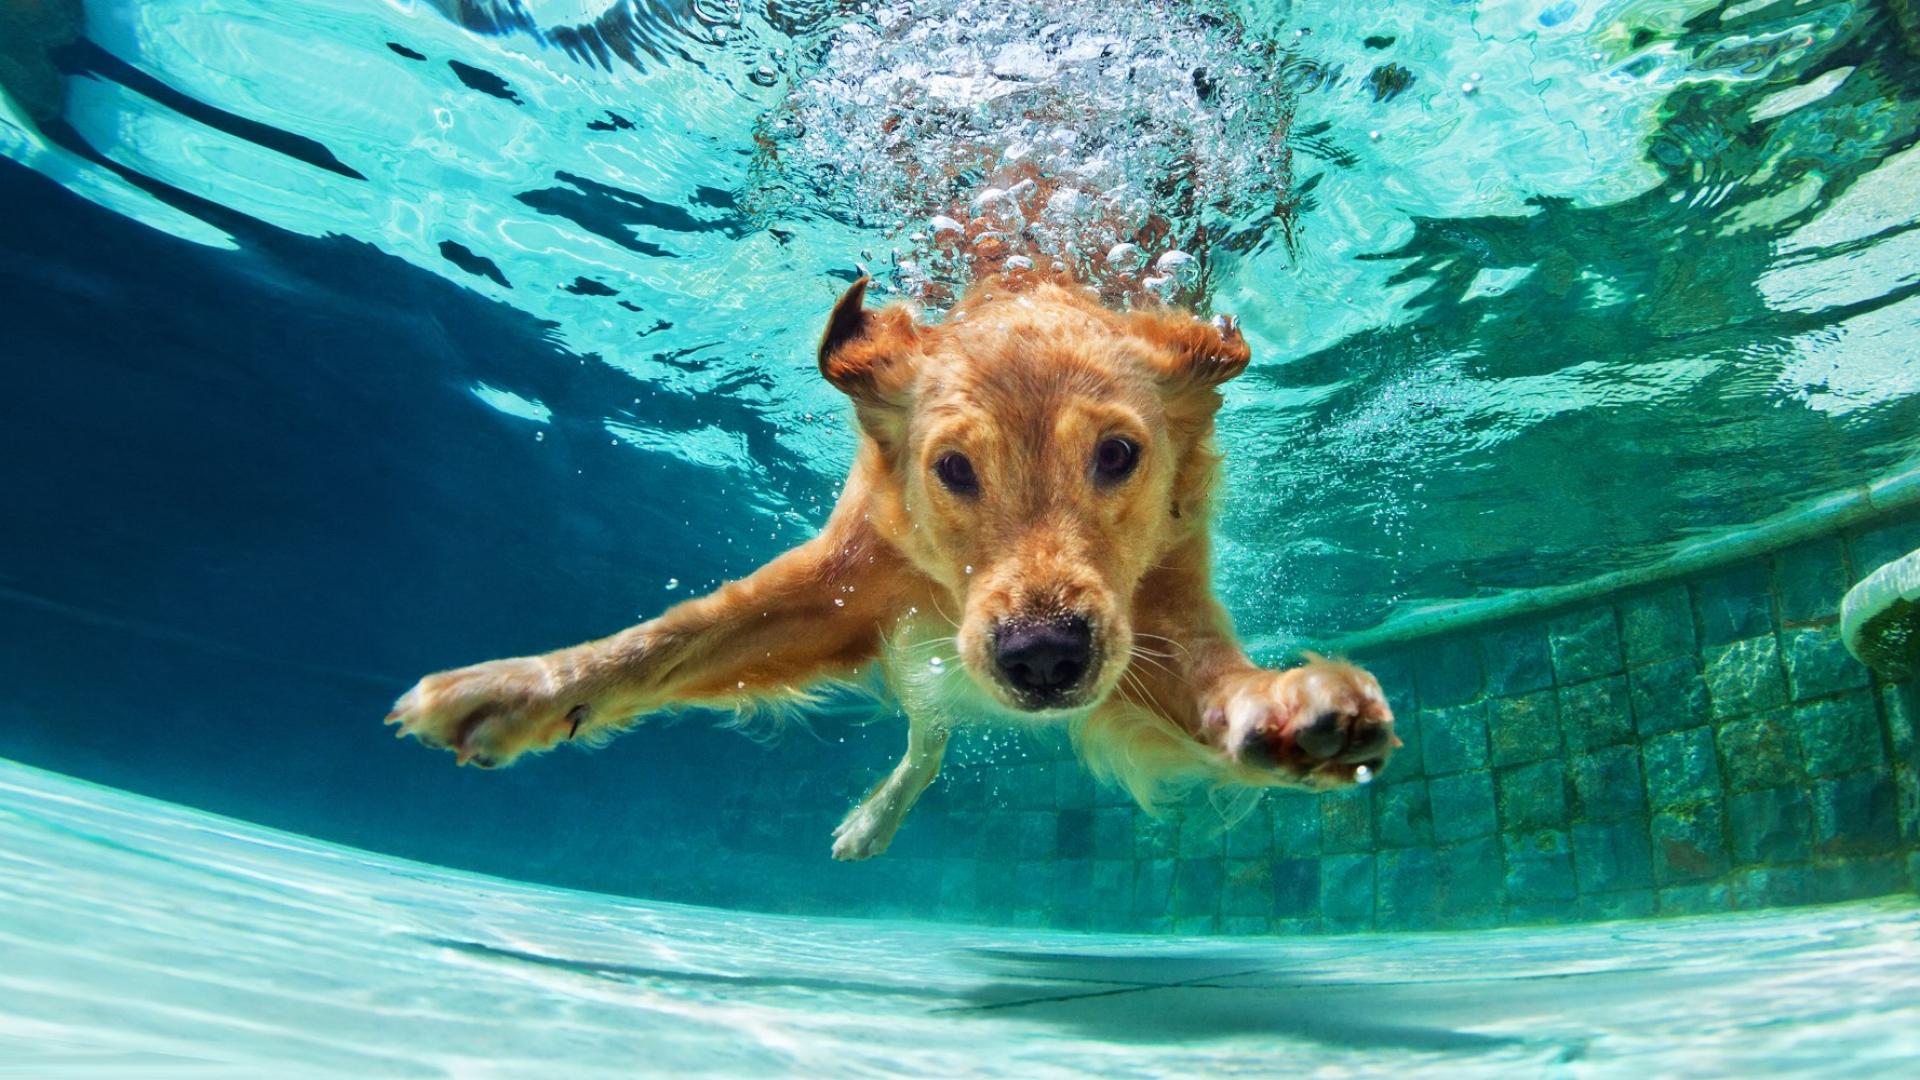 Auf dem Bild ist ein Golden Retreiver zu sehen, der gerade unter Wasser in einem Swimmingpool taucht.